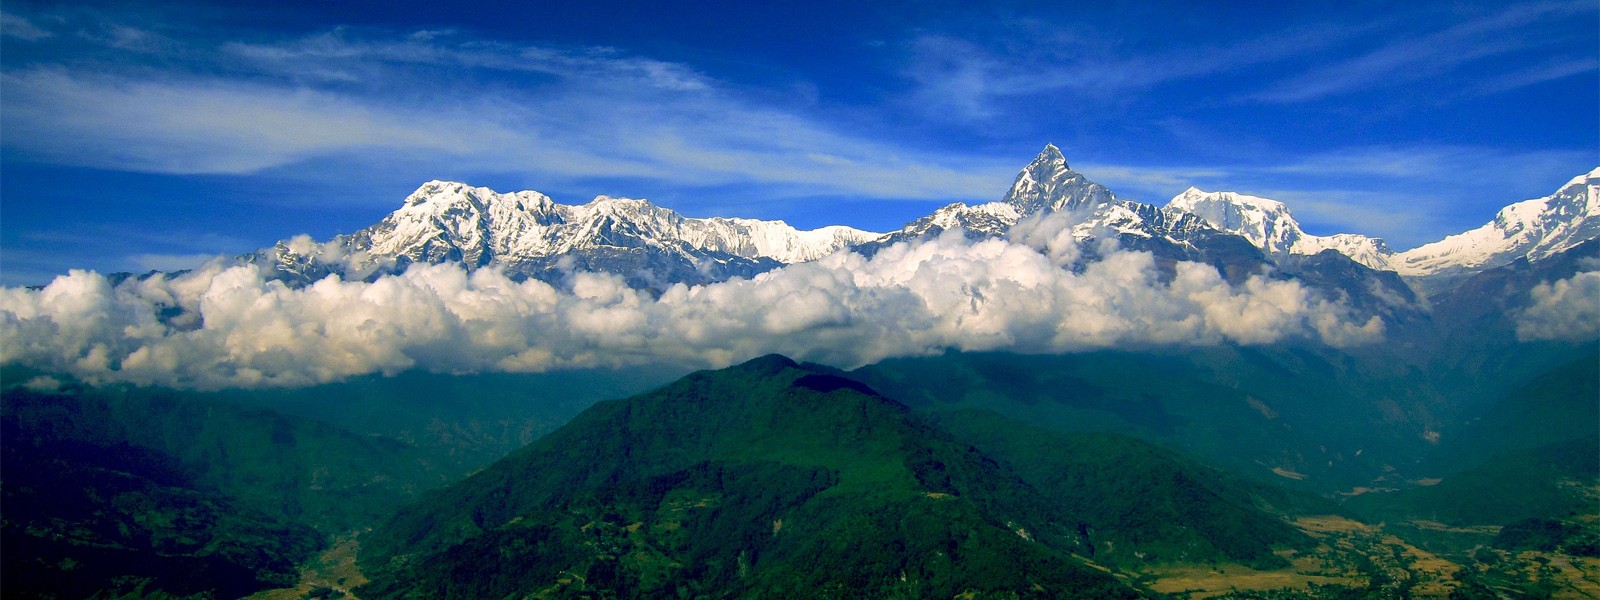 Panchase Trekking in Annapurna Region